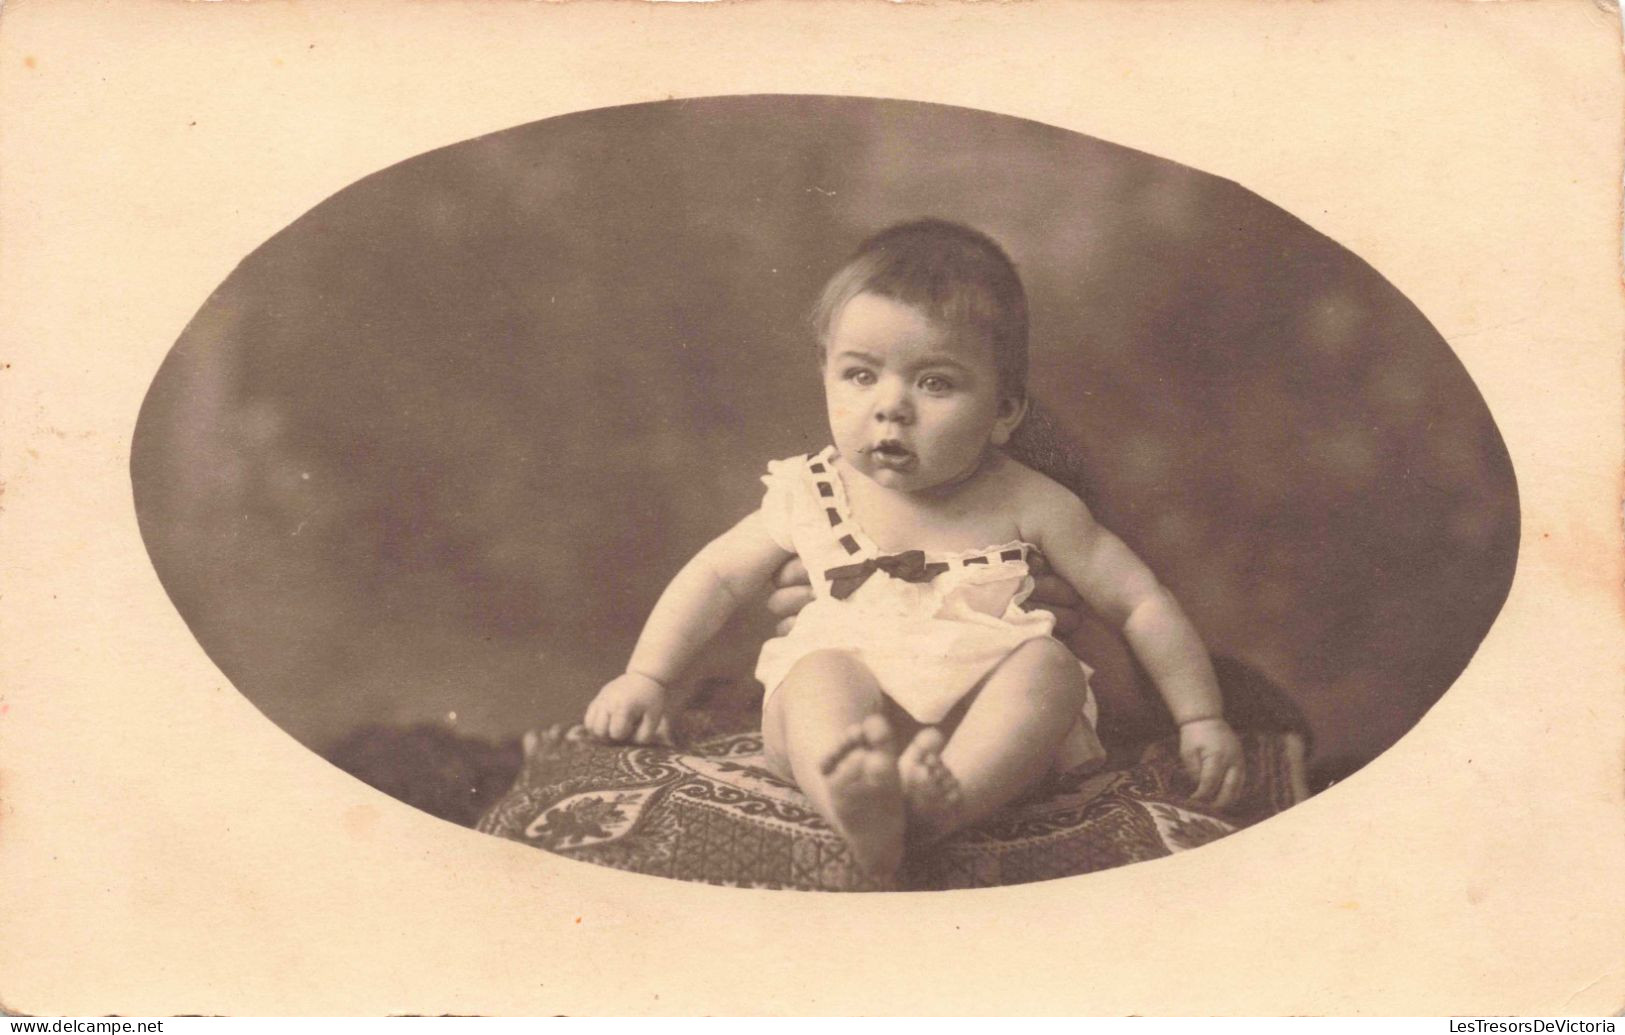 ENFANT - Portrait - Portrait D'un Bébé  - Carte Postale Ancienne - Portraits